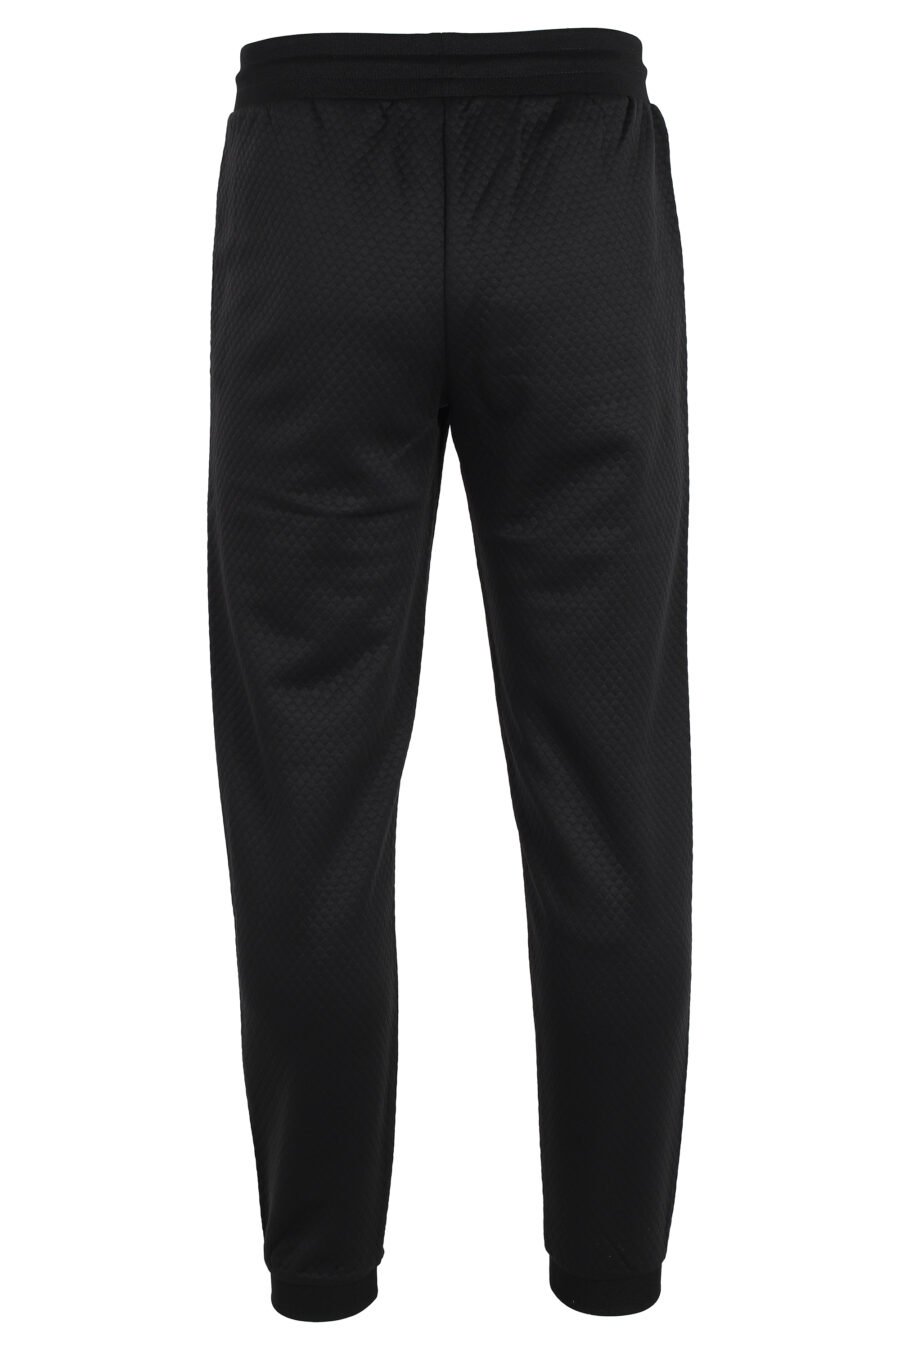 Pantalón de chándal negro con logo placa dorada "lux identity" - IMG 4818